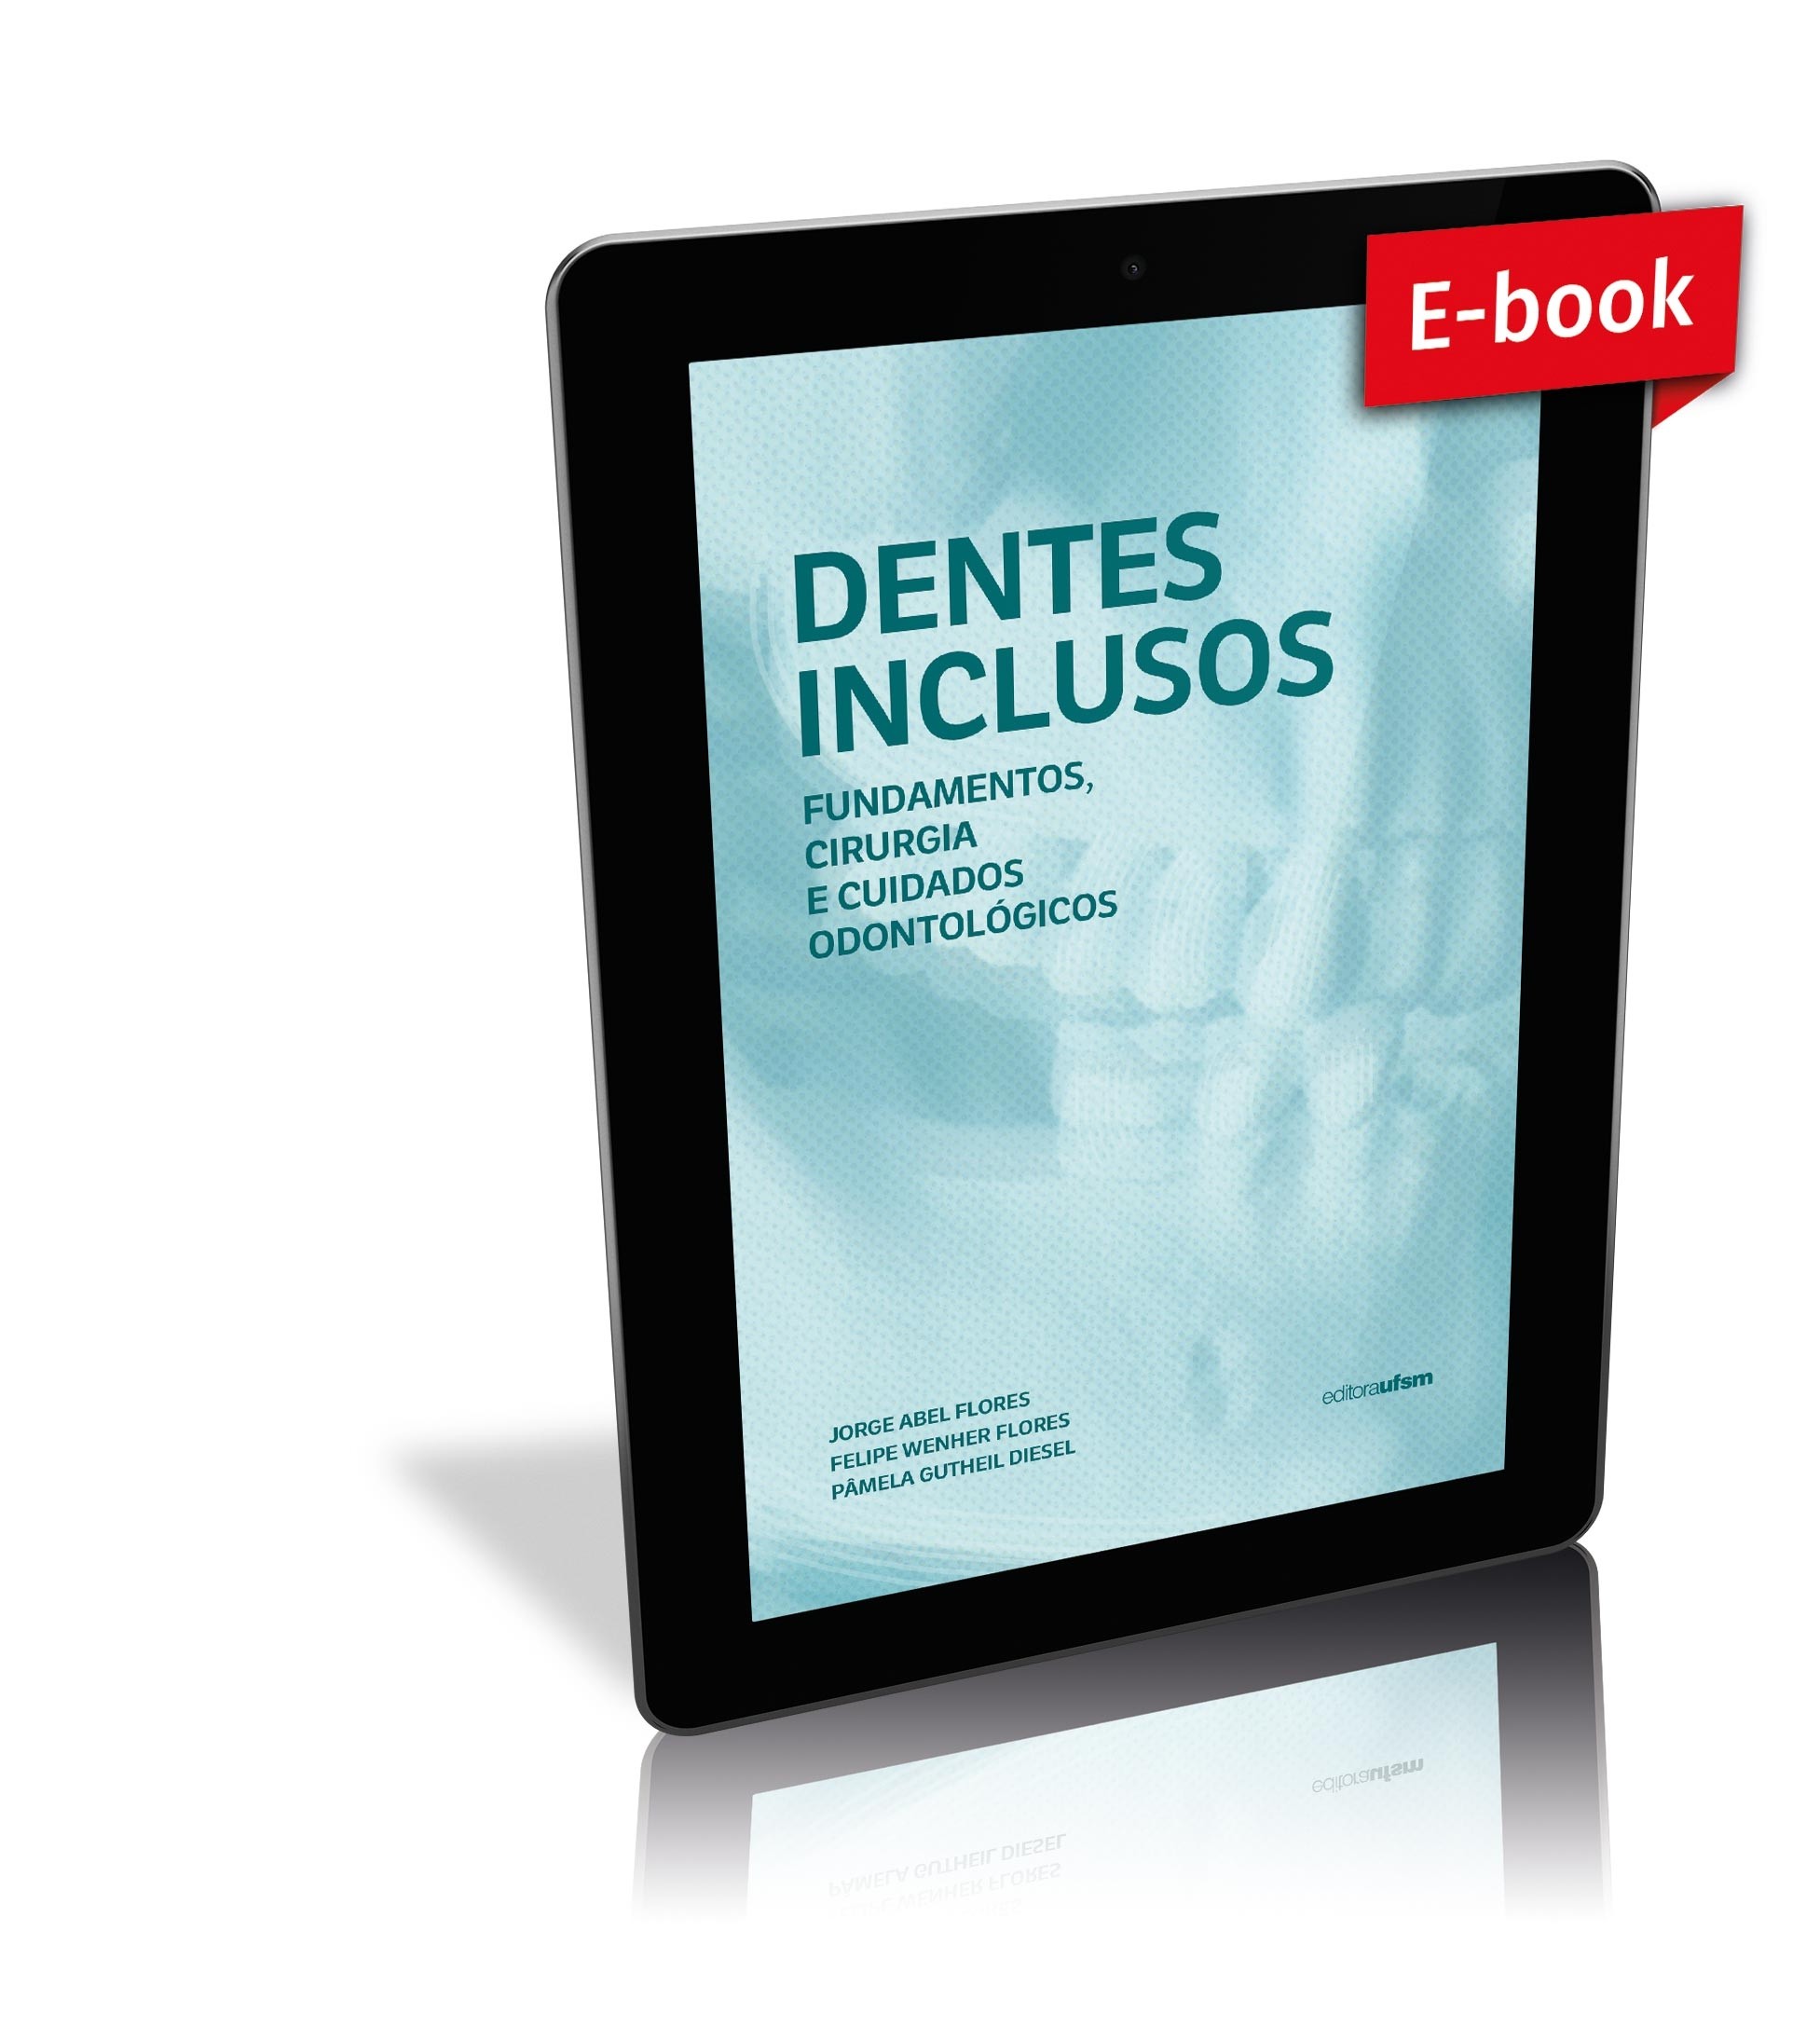 Capa do e-book Dentes inclusos: fundamentos, cirurgia e cuidados odontológicos